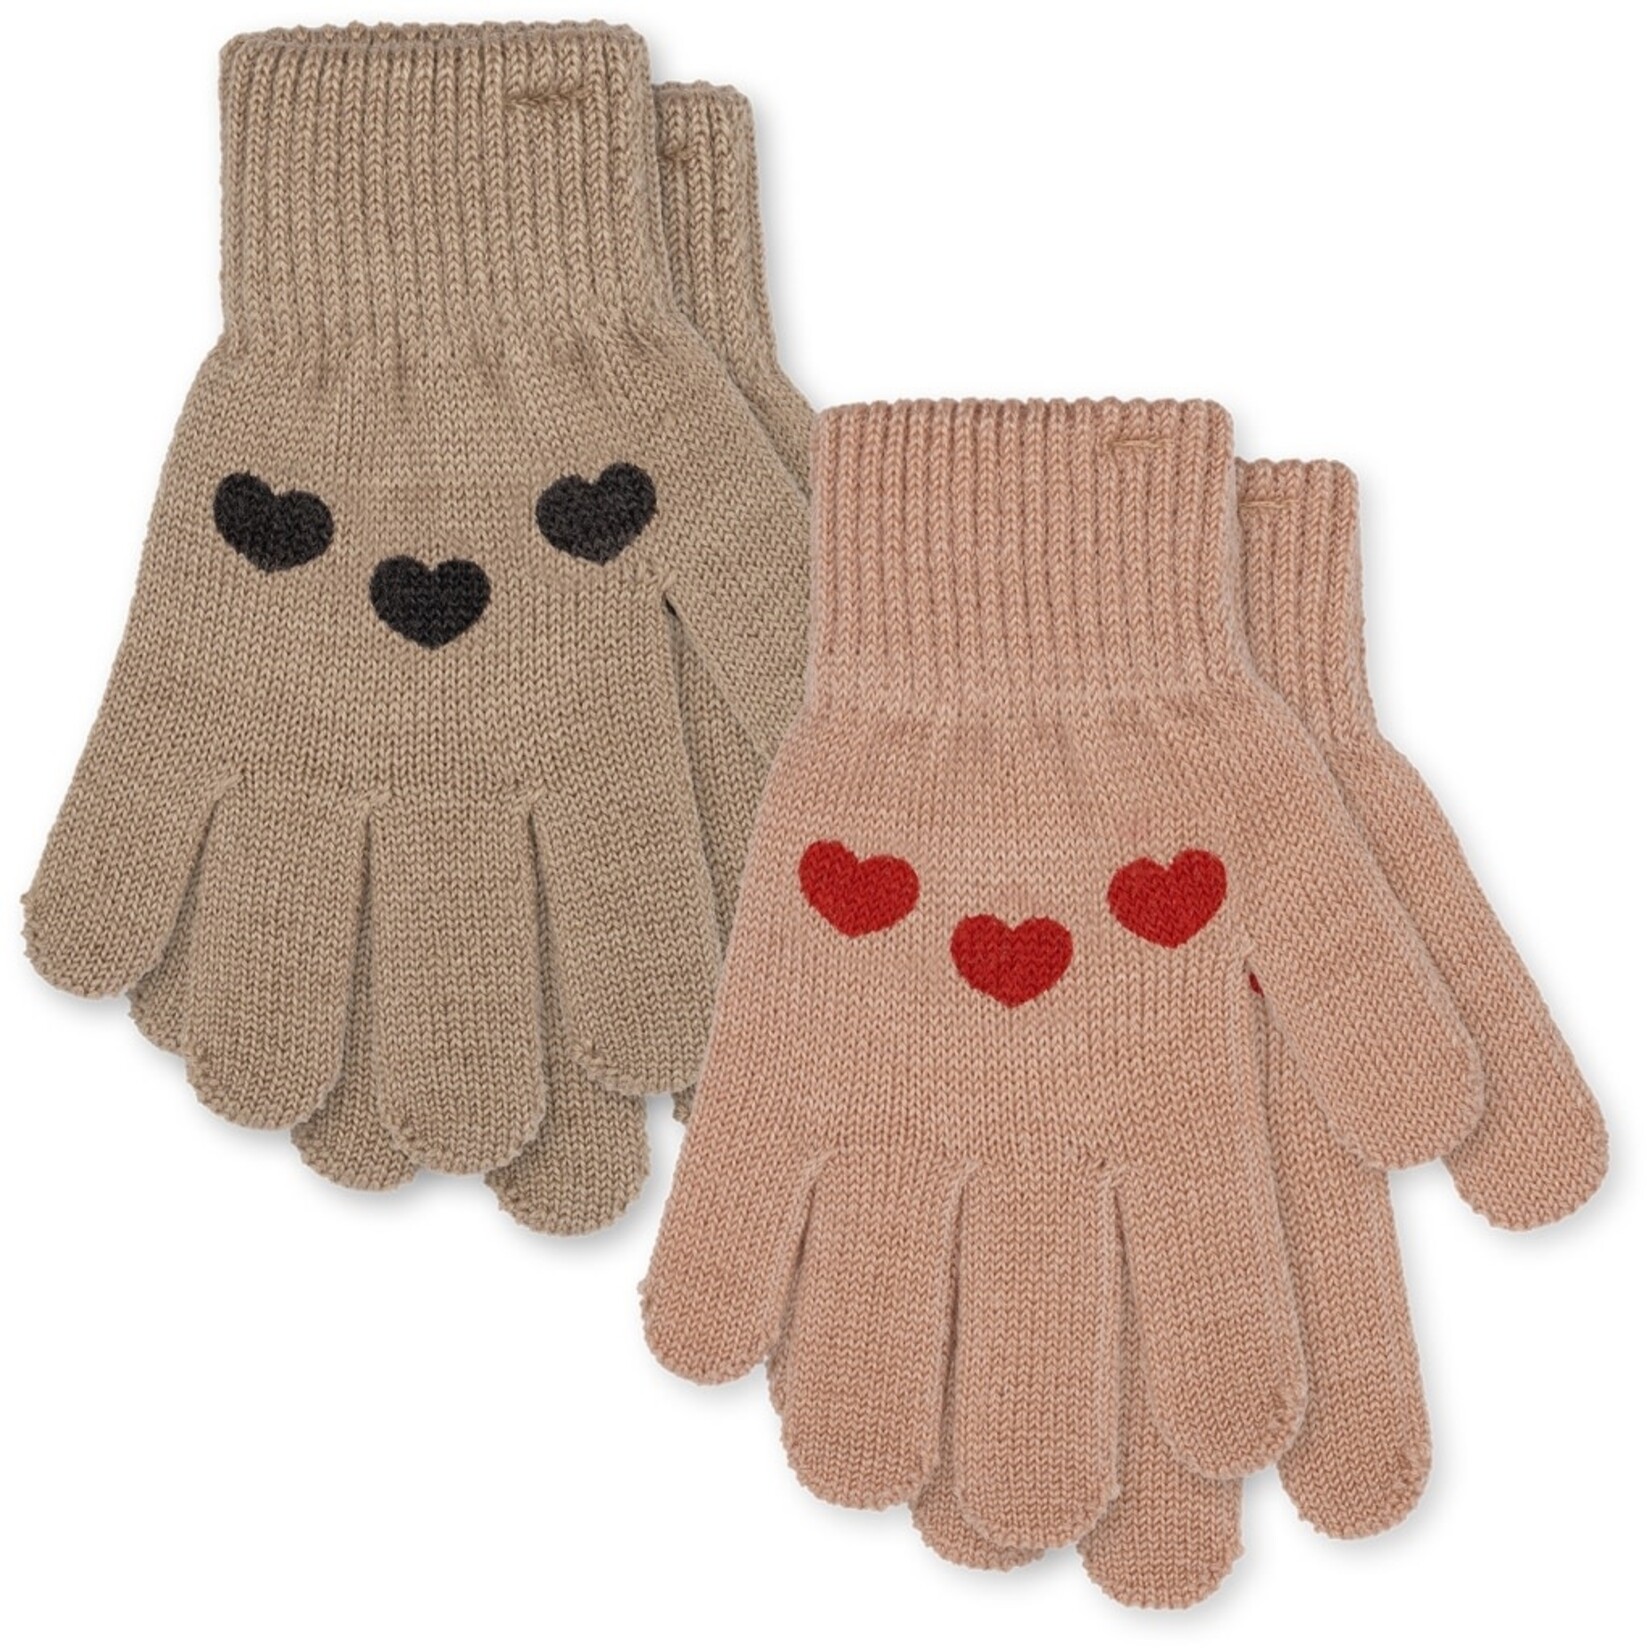 Acheter Gants de poussette chauds d'hiver pour enfants, protège